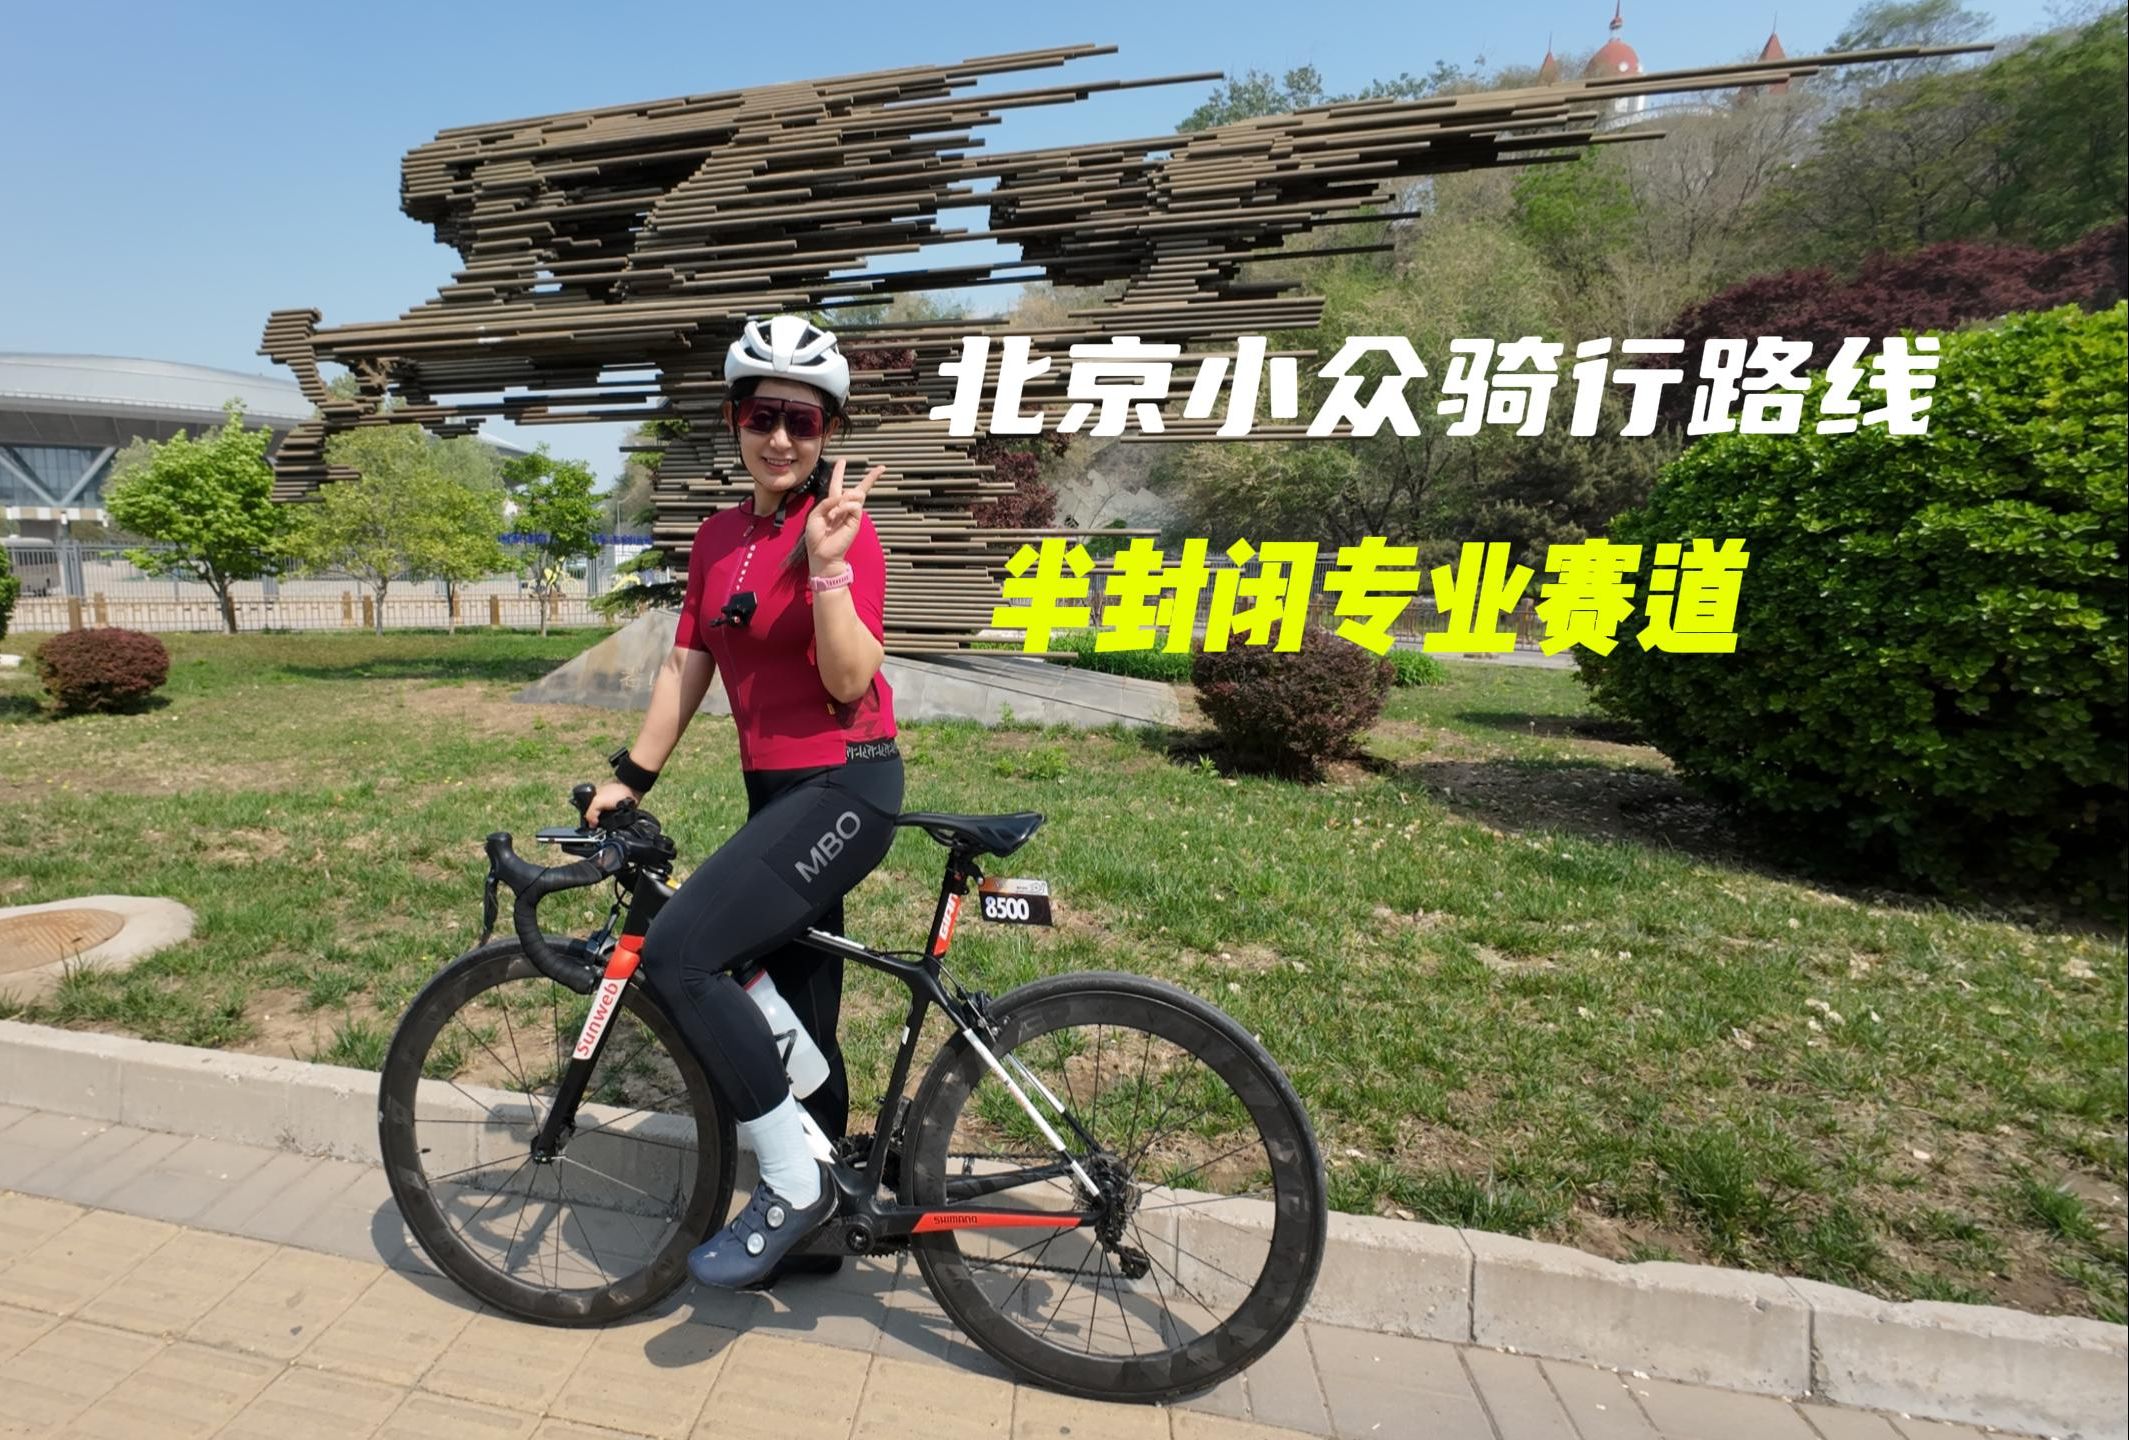 北京小众骑行路线，半封闭专业赛道，没有汽车，没有红绿灯，五环以内春日骑行好去处！